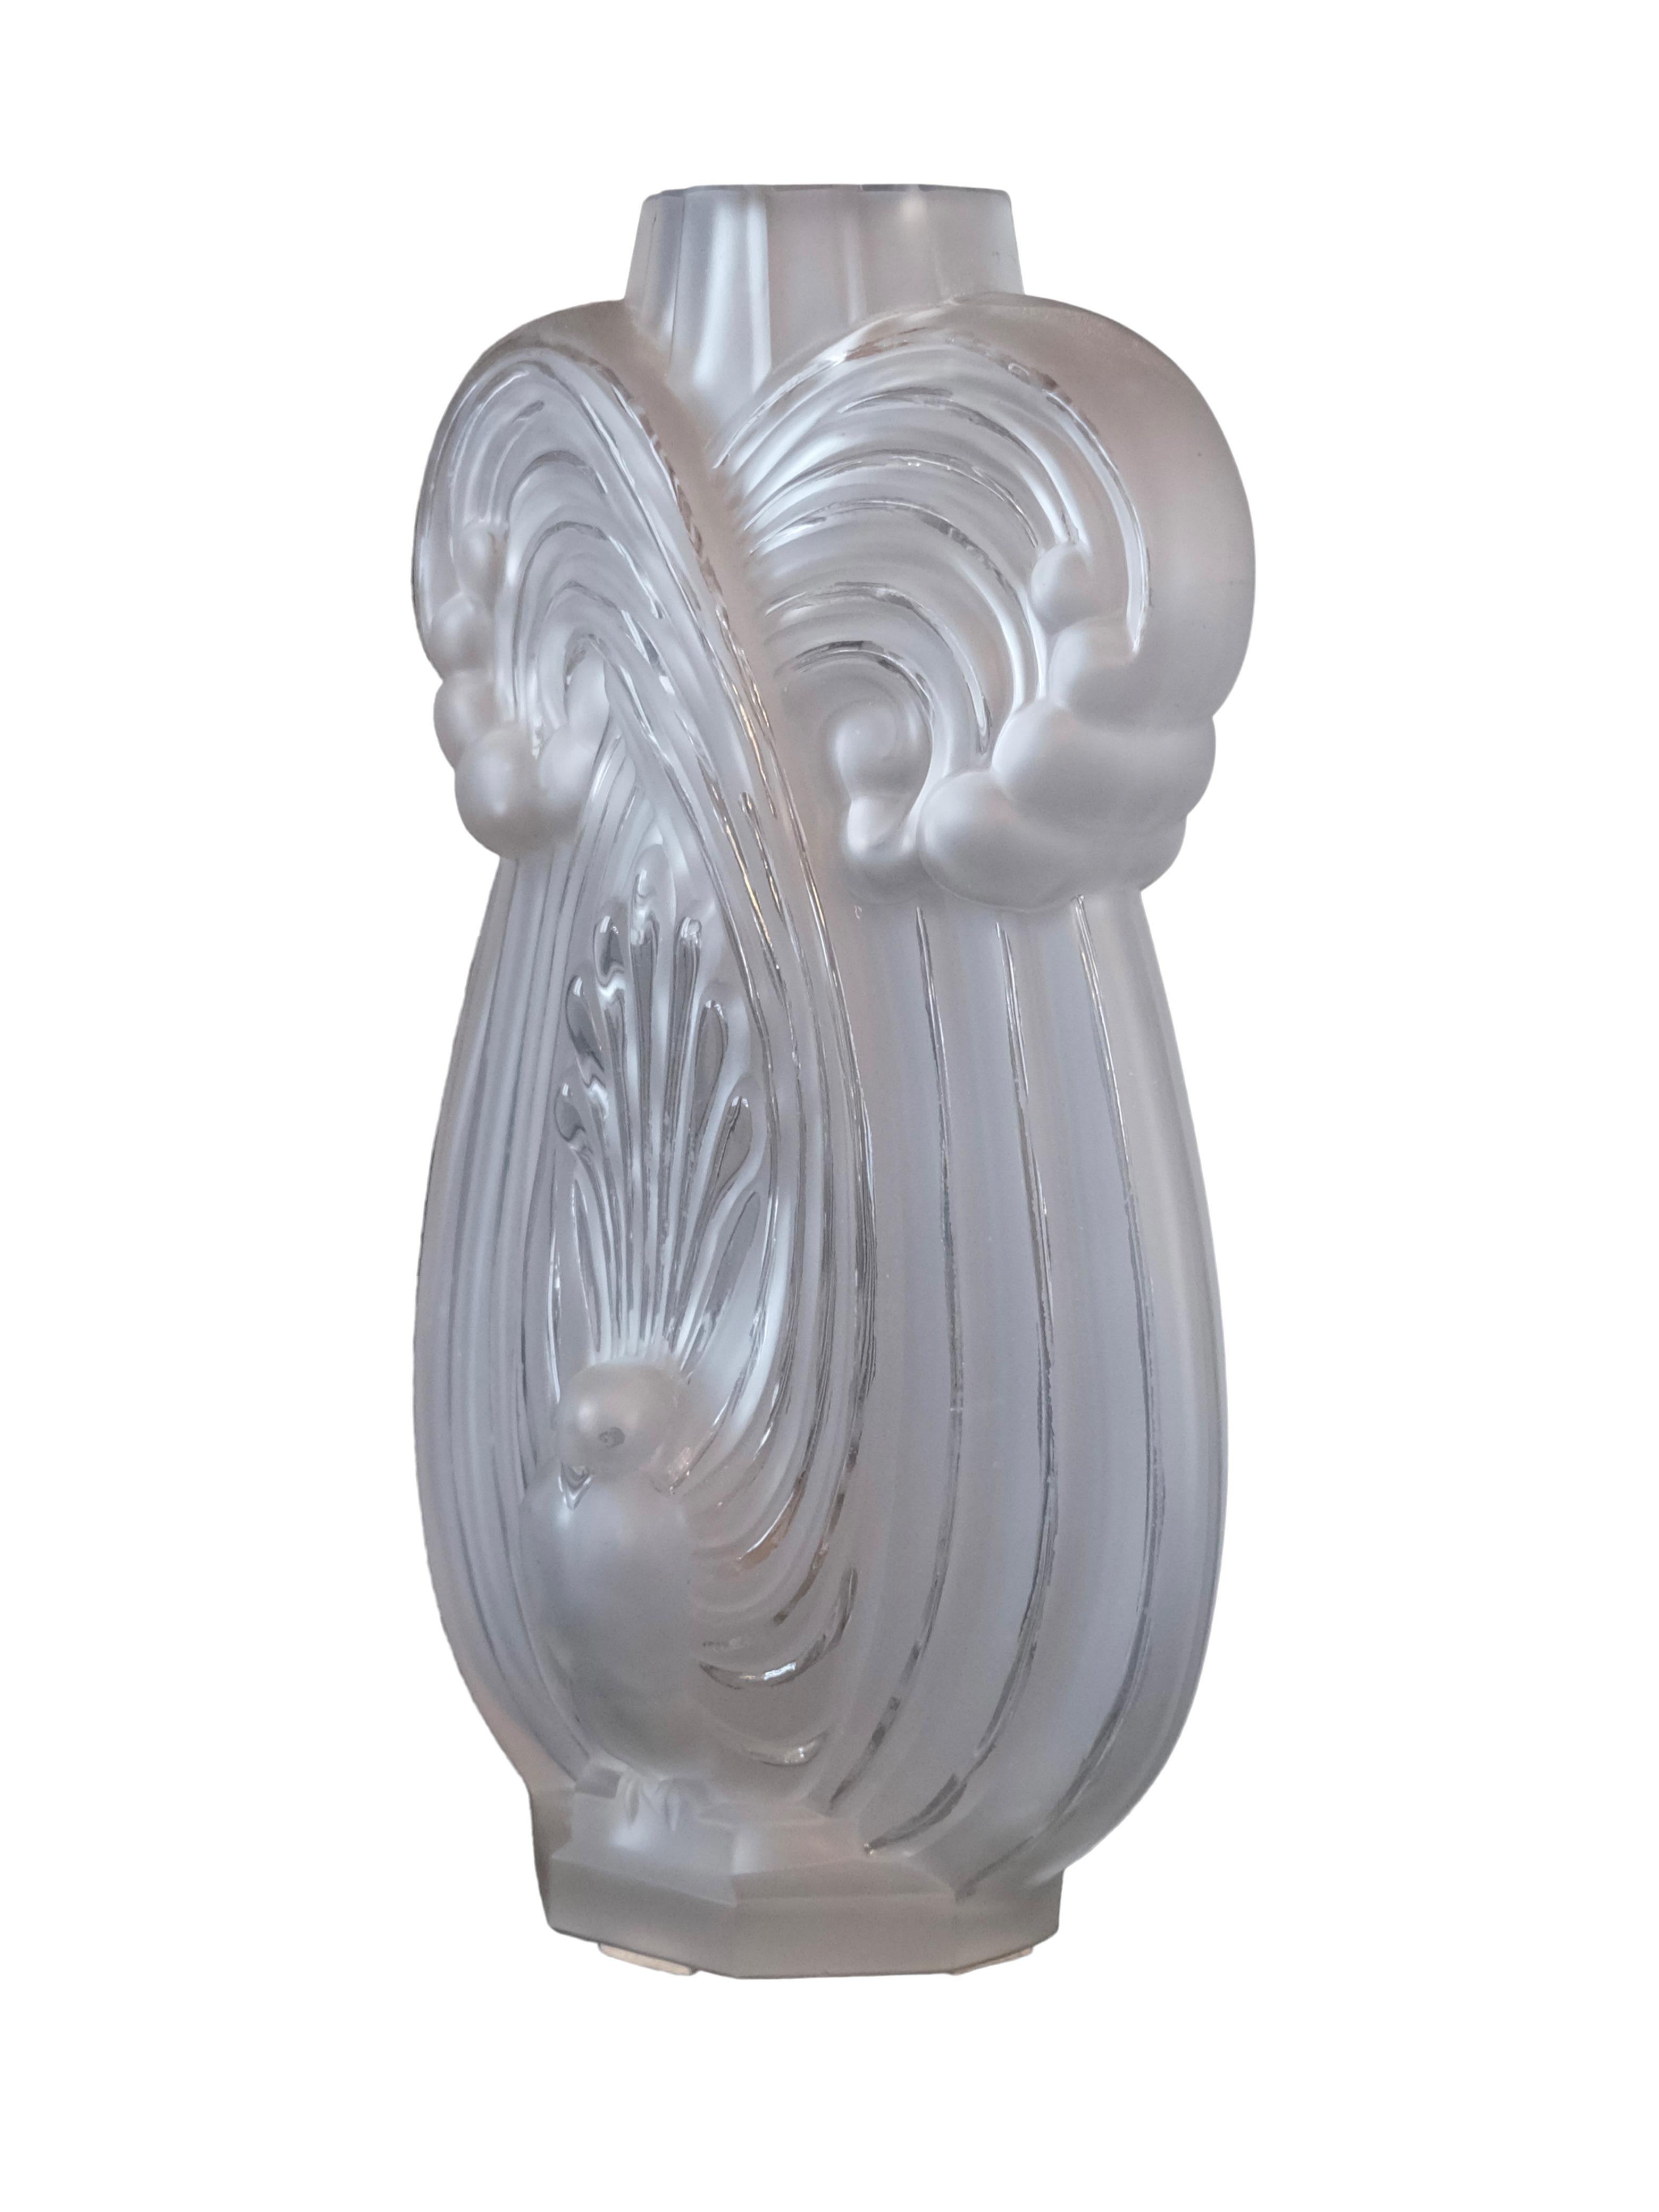 Art Nouveau Art Deco Glass vase with stylized peacock motif by Etling Paris For Sale